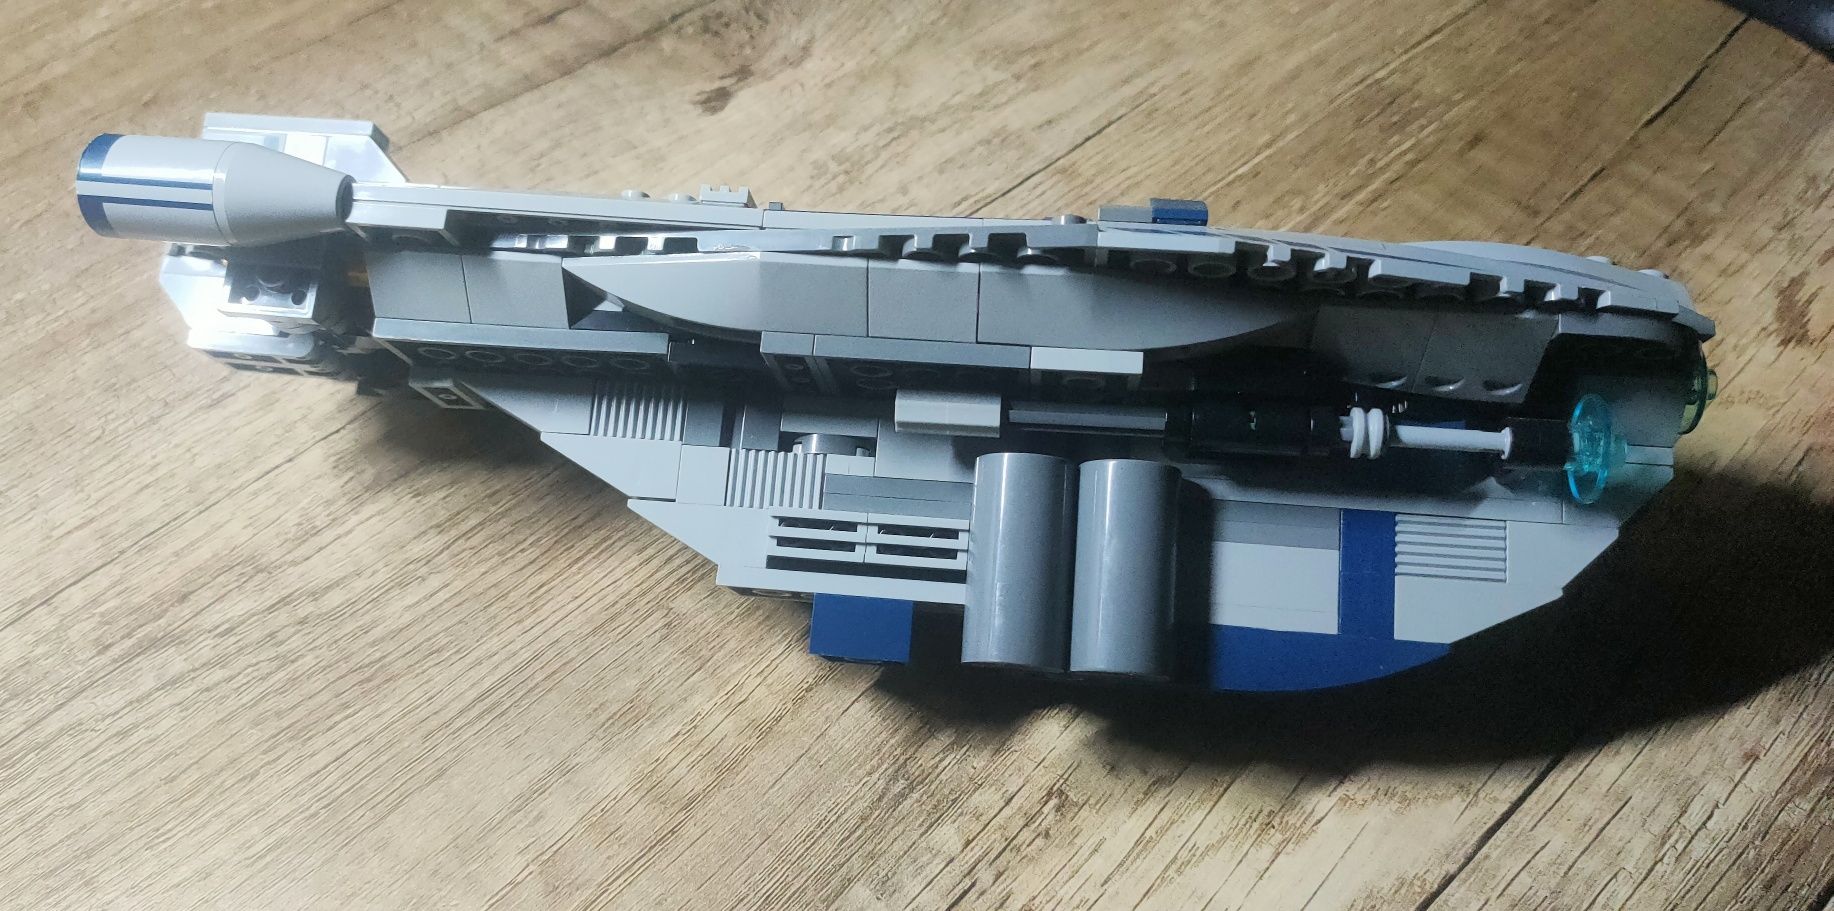 LEGO star wars Cad bane's speeder 8128